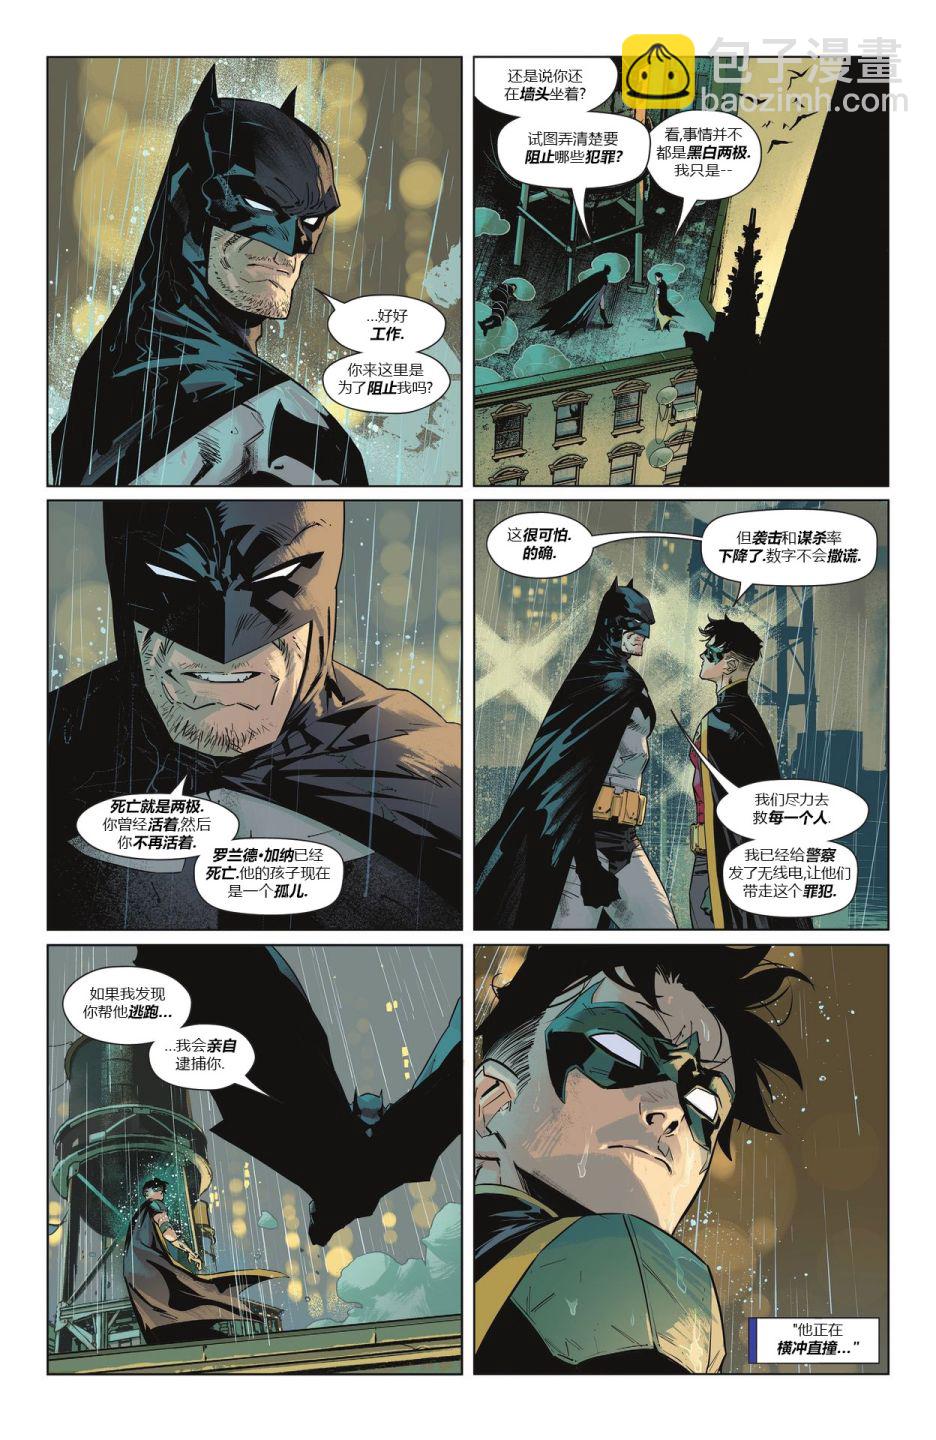 蝙蝠俠/貓女-哥譚戰爭 - 蝙蝠俠V3#137 - 2